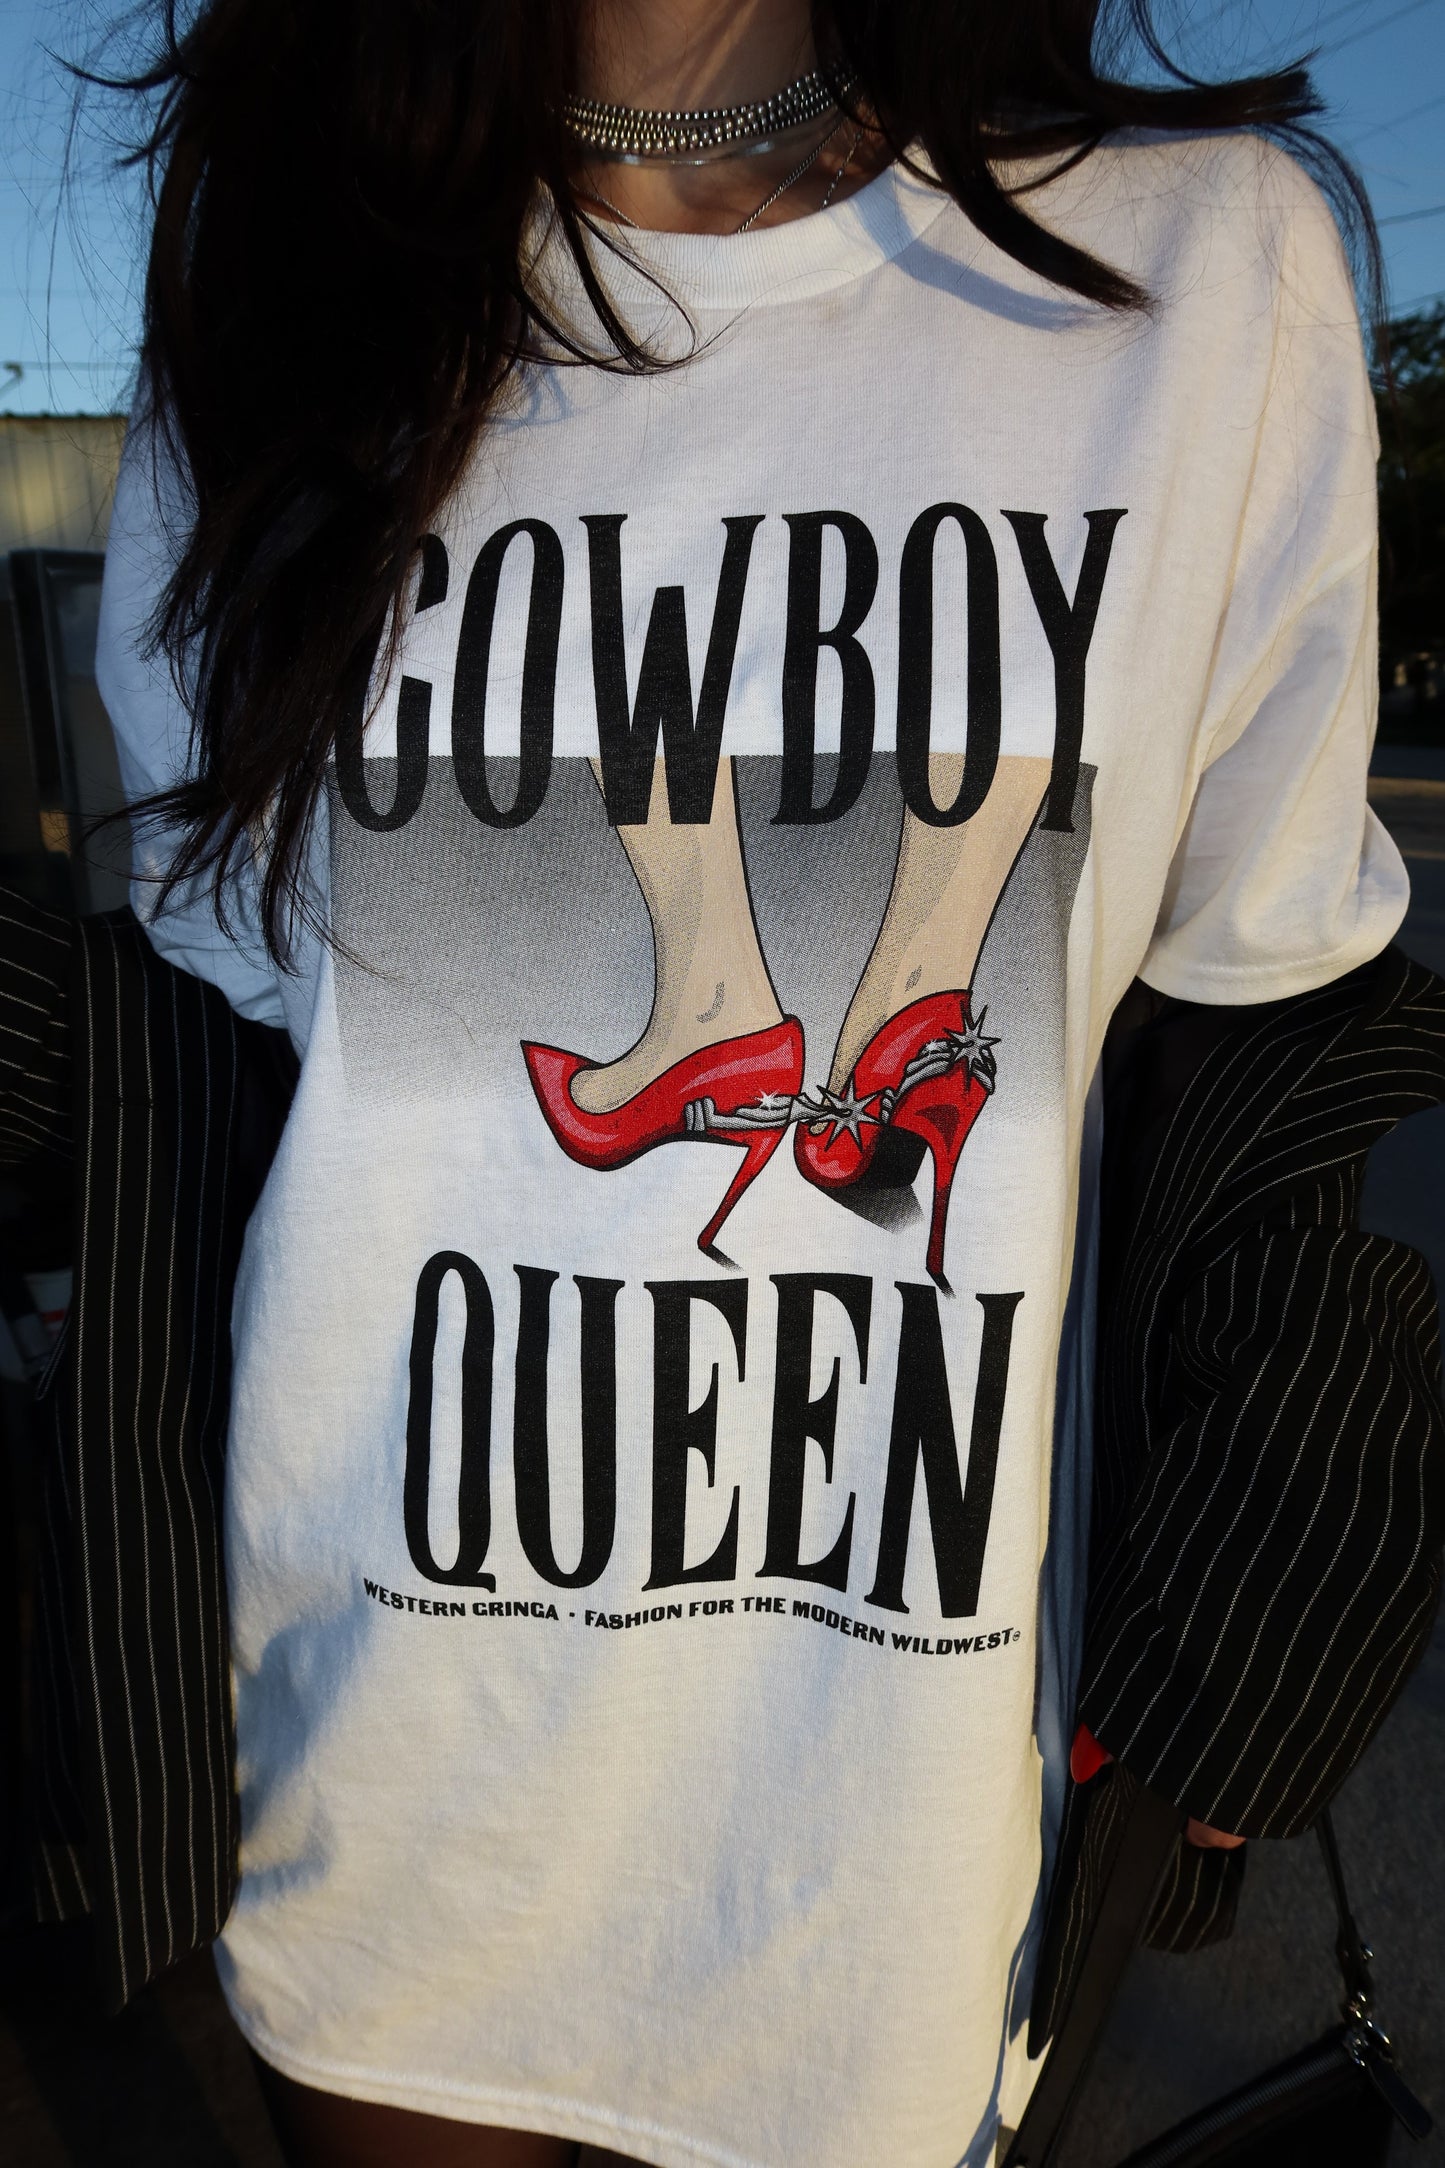 cowboy queen tee